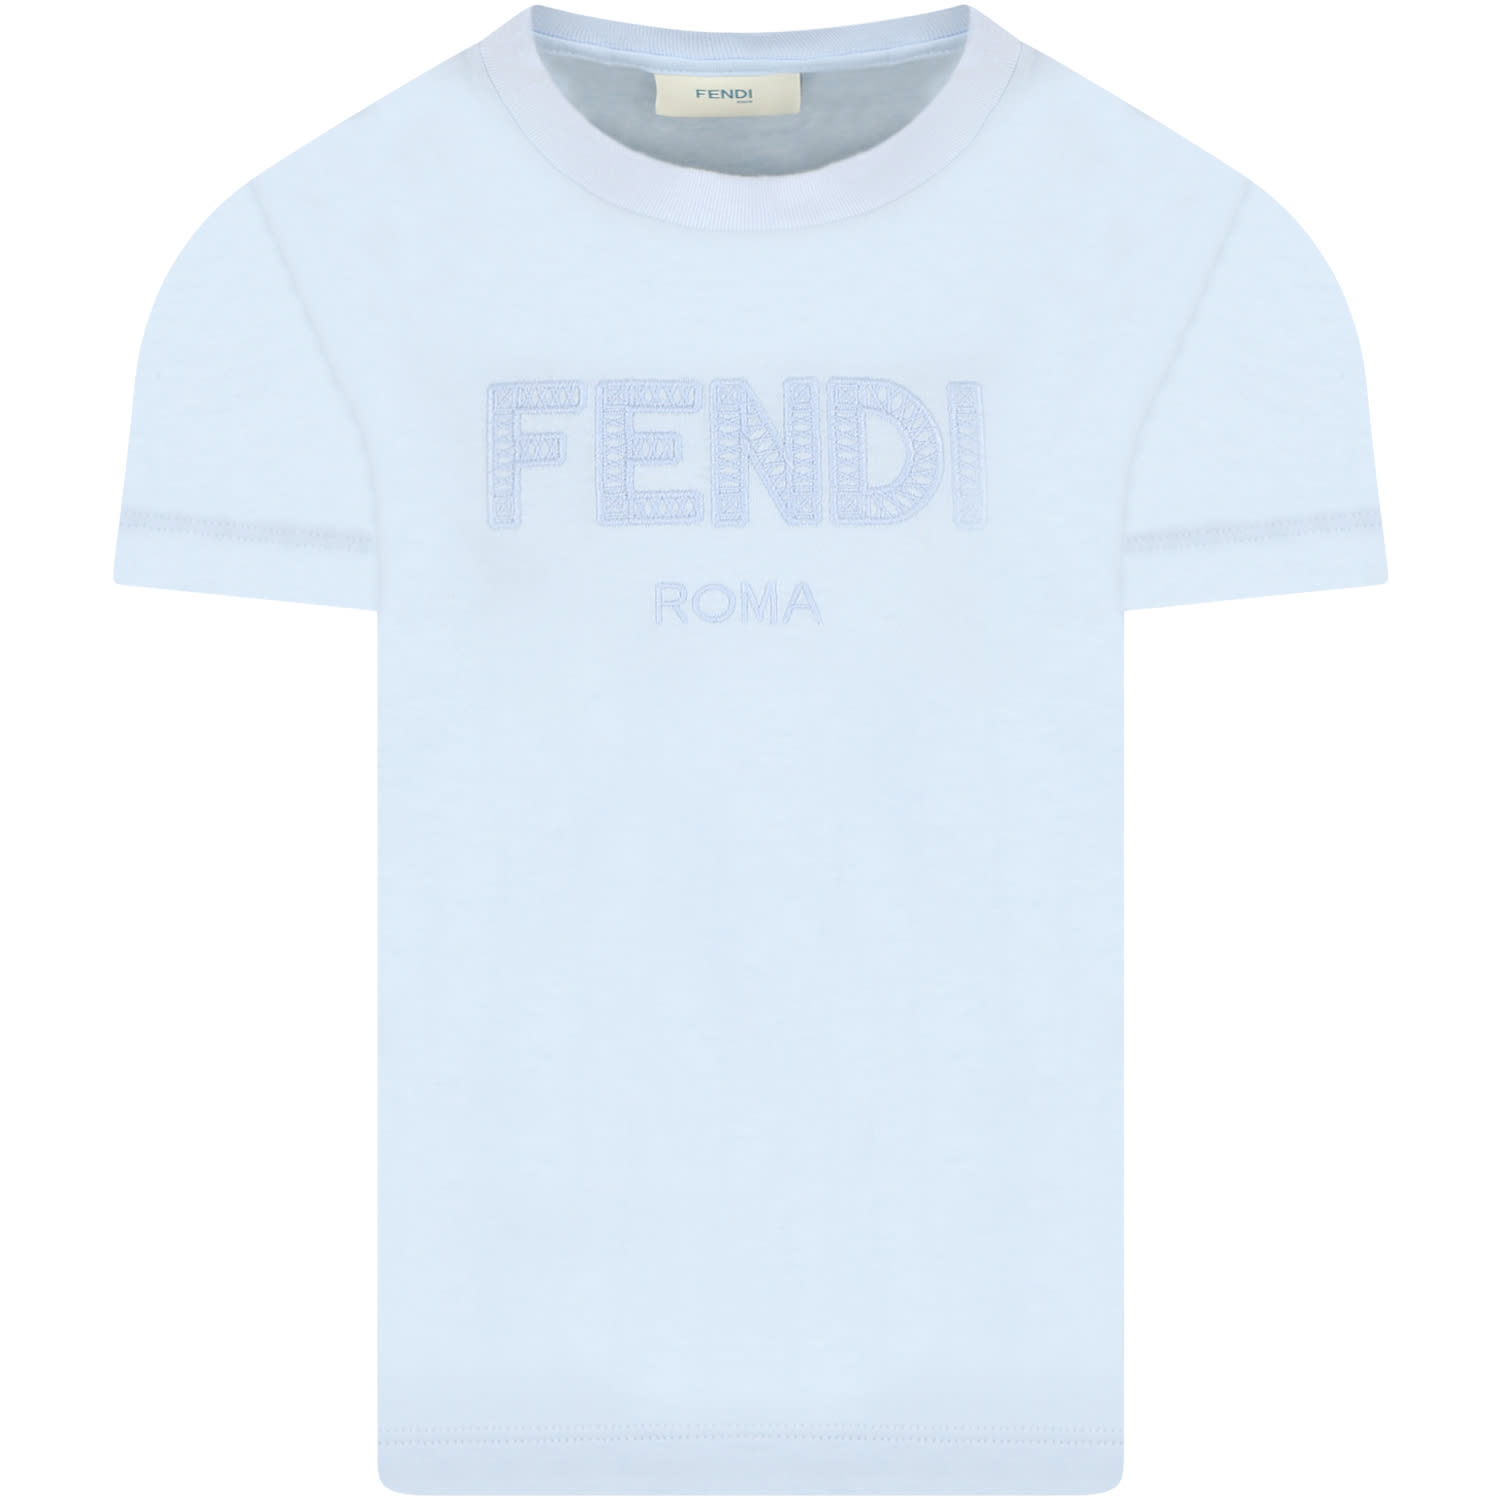 Fendi Light Blue T-shirt For Kids With Logo